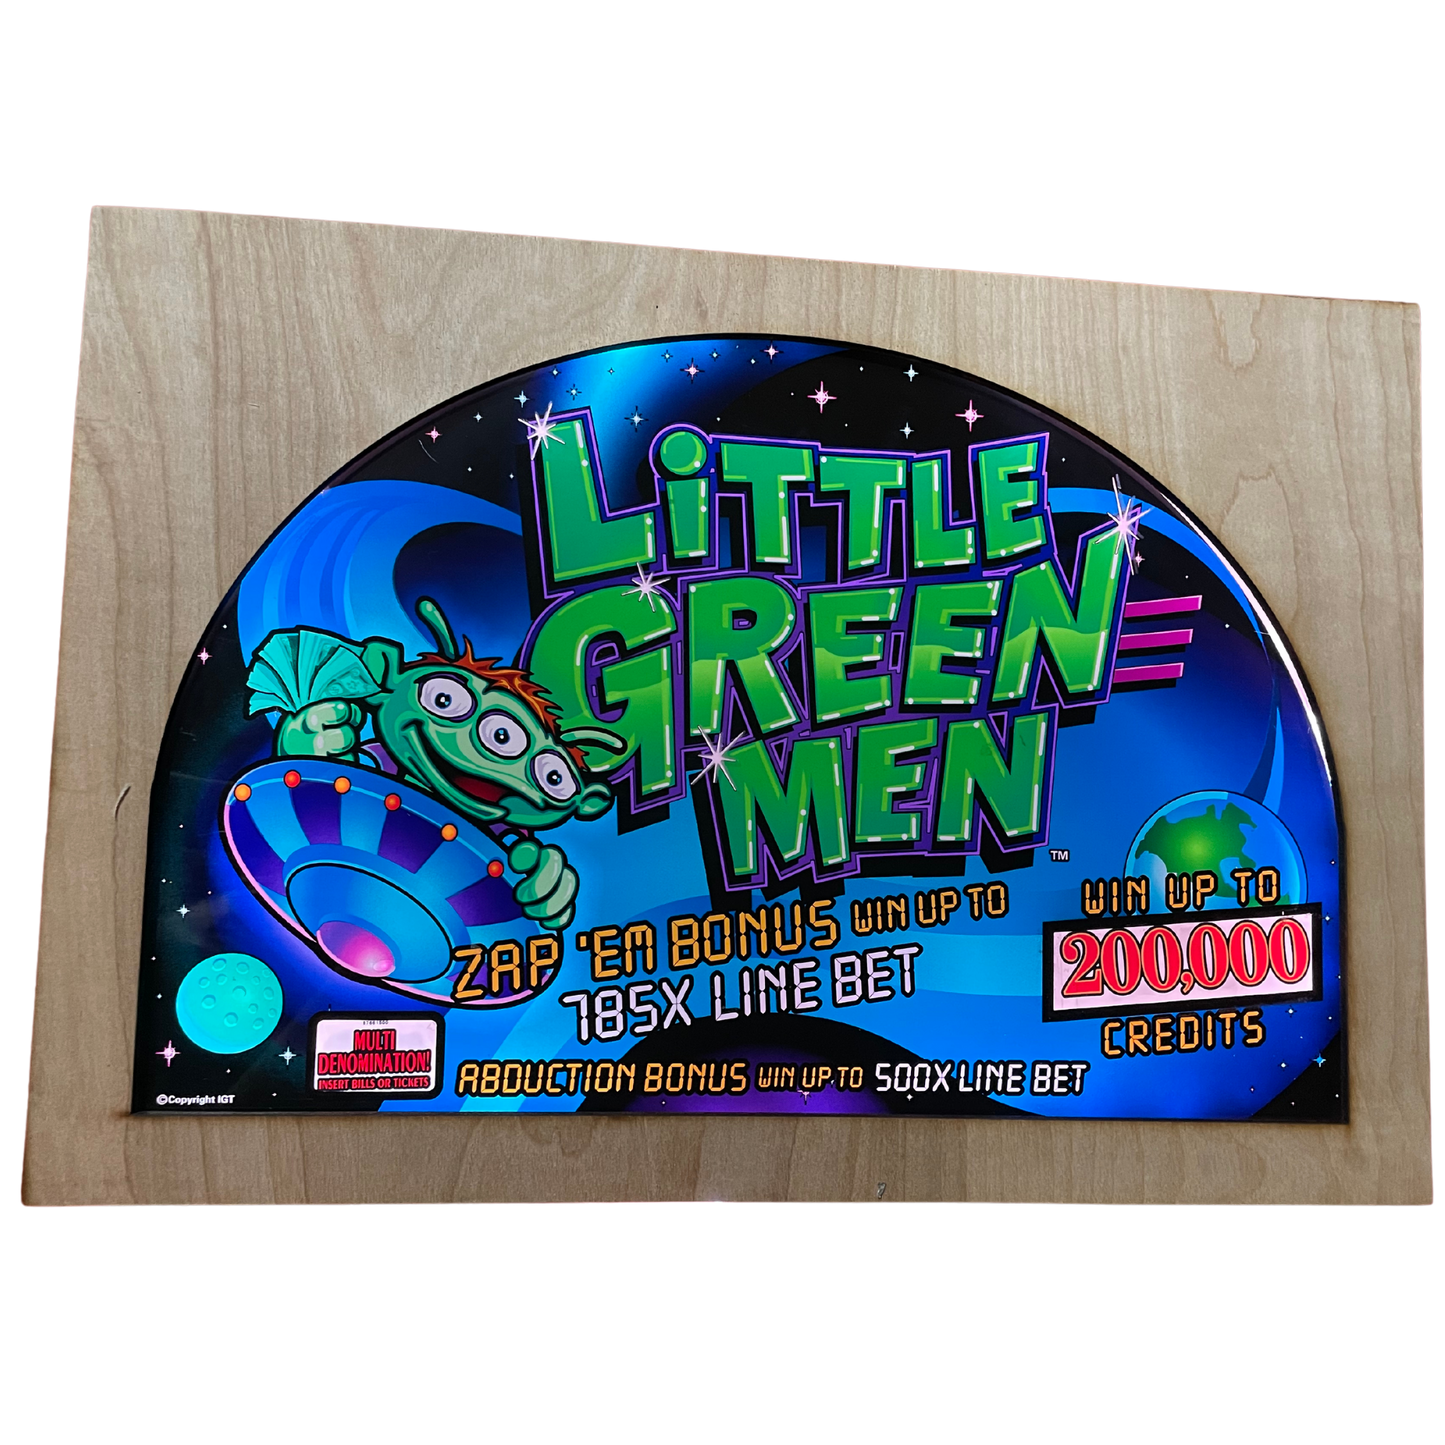 Little Green Men Slot Glass